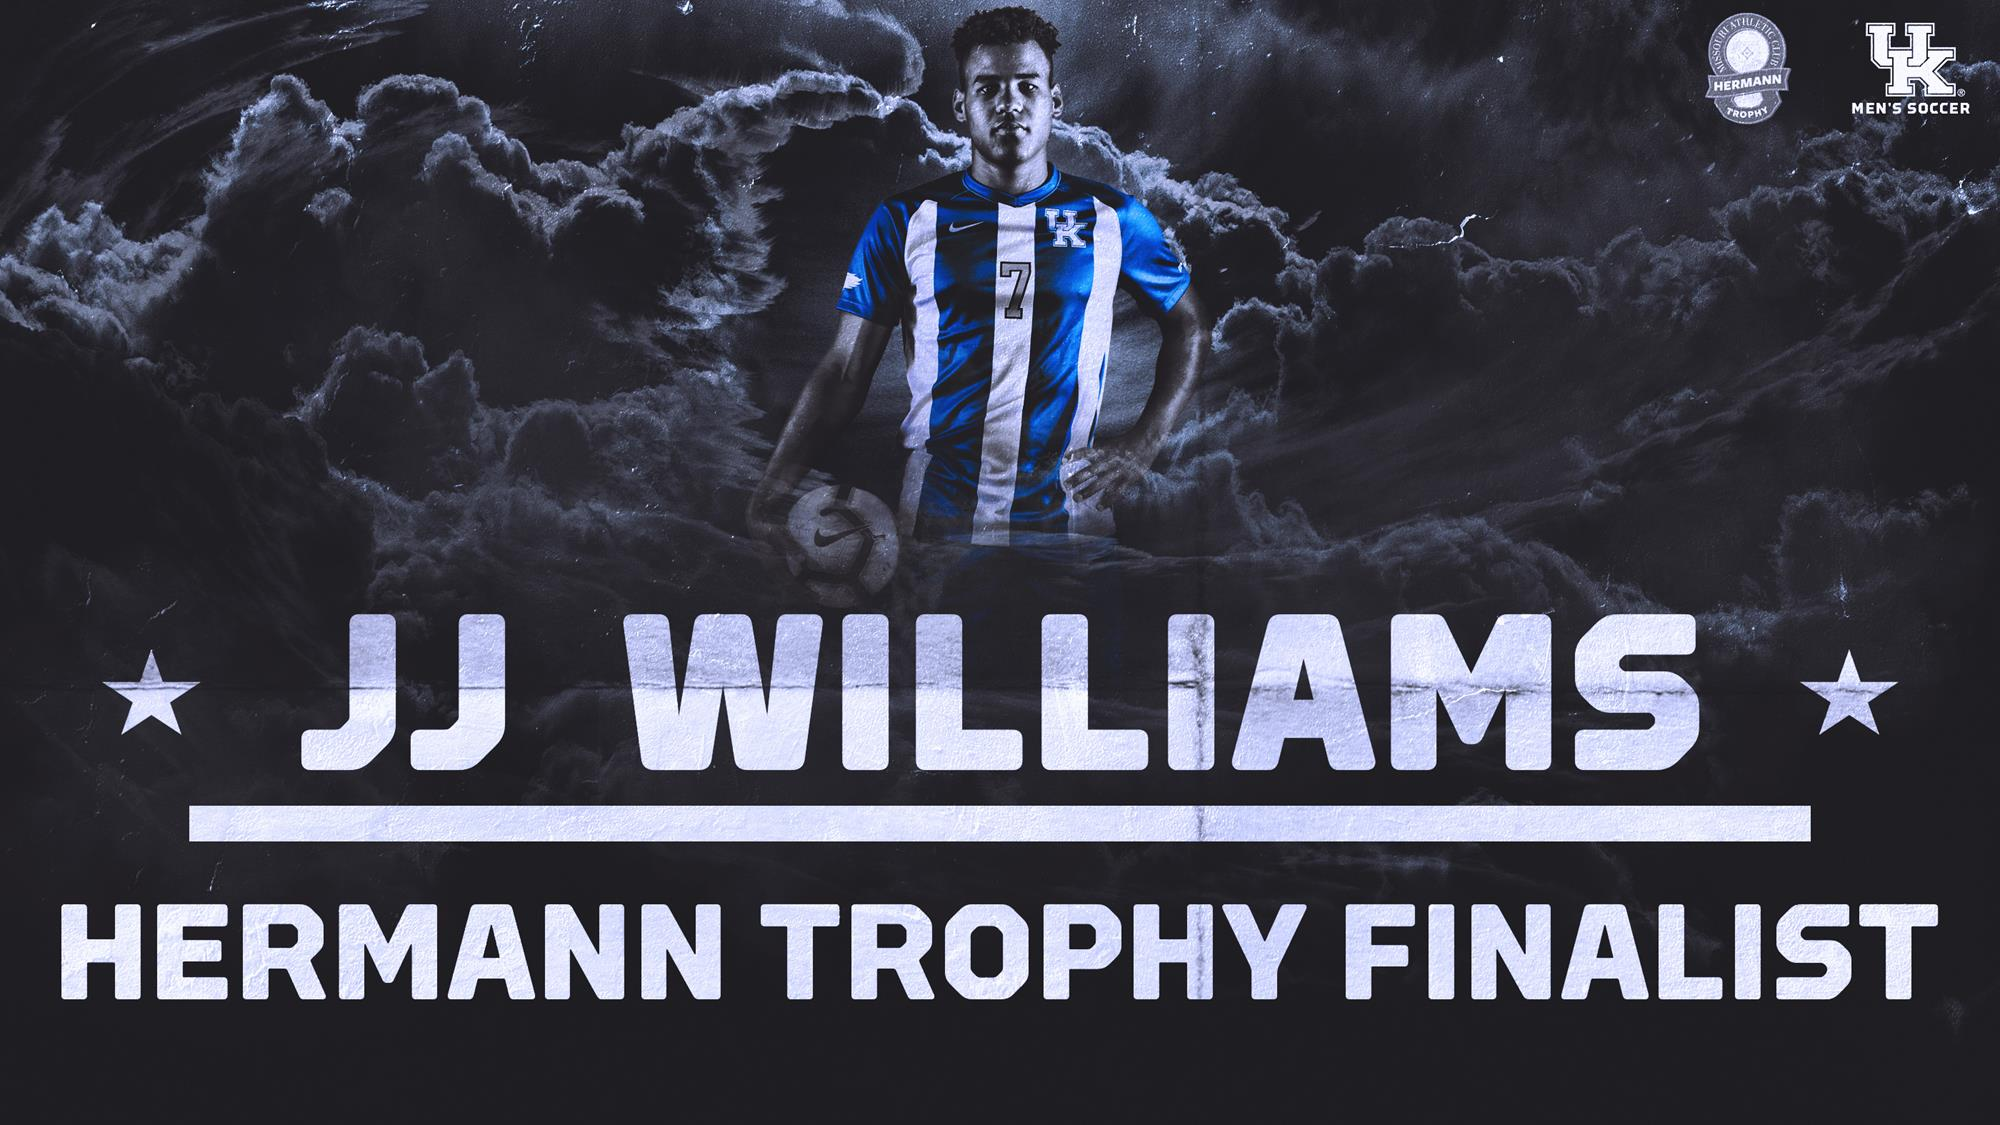 Kentucky’s JJ Williams a MAC Hermann Trophy Finalist